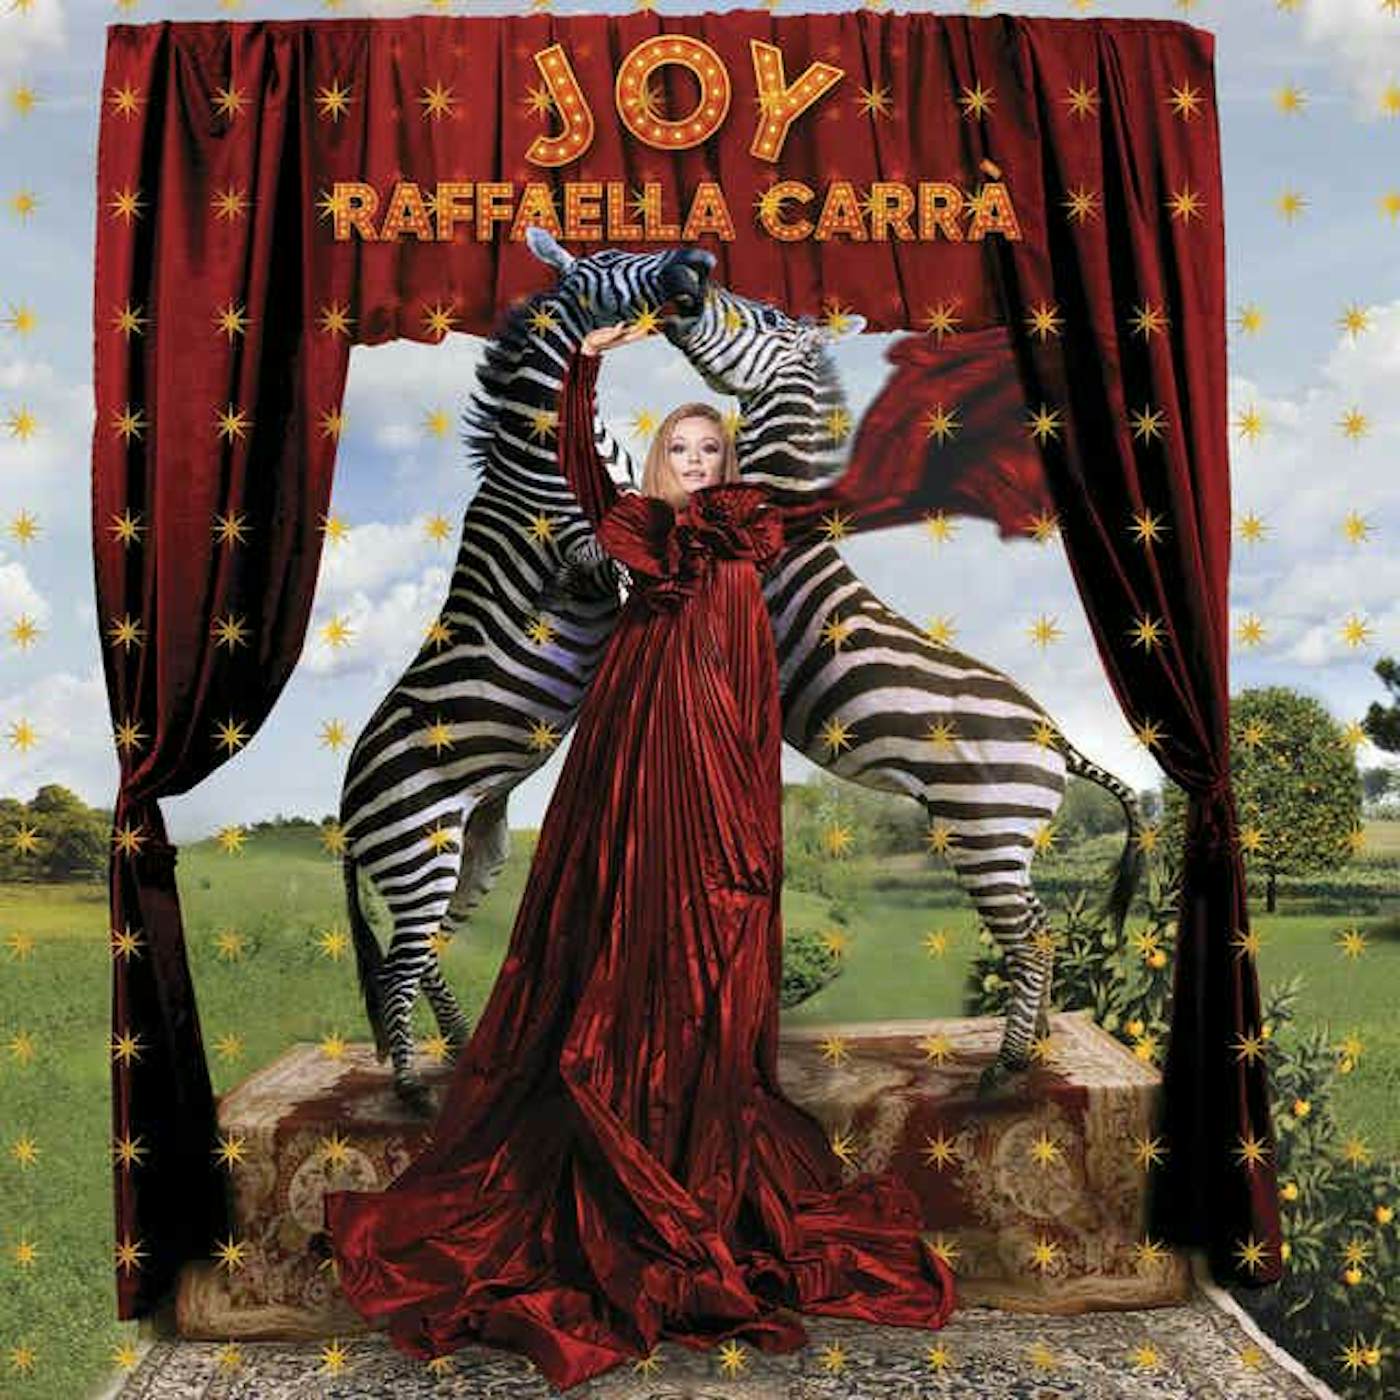 Raffaella Carrà JOY Vinyl Record